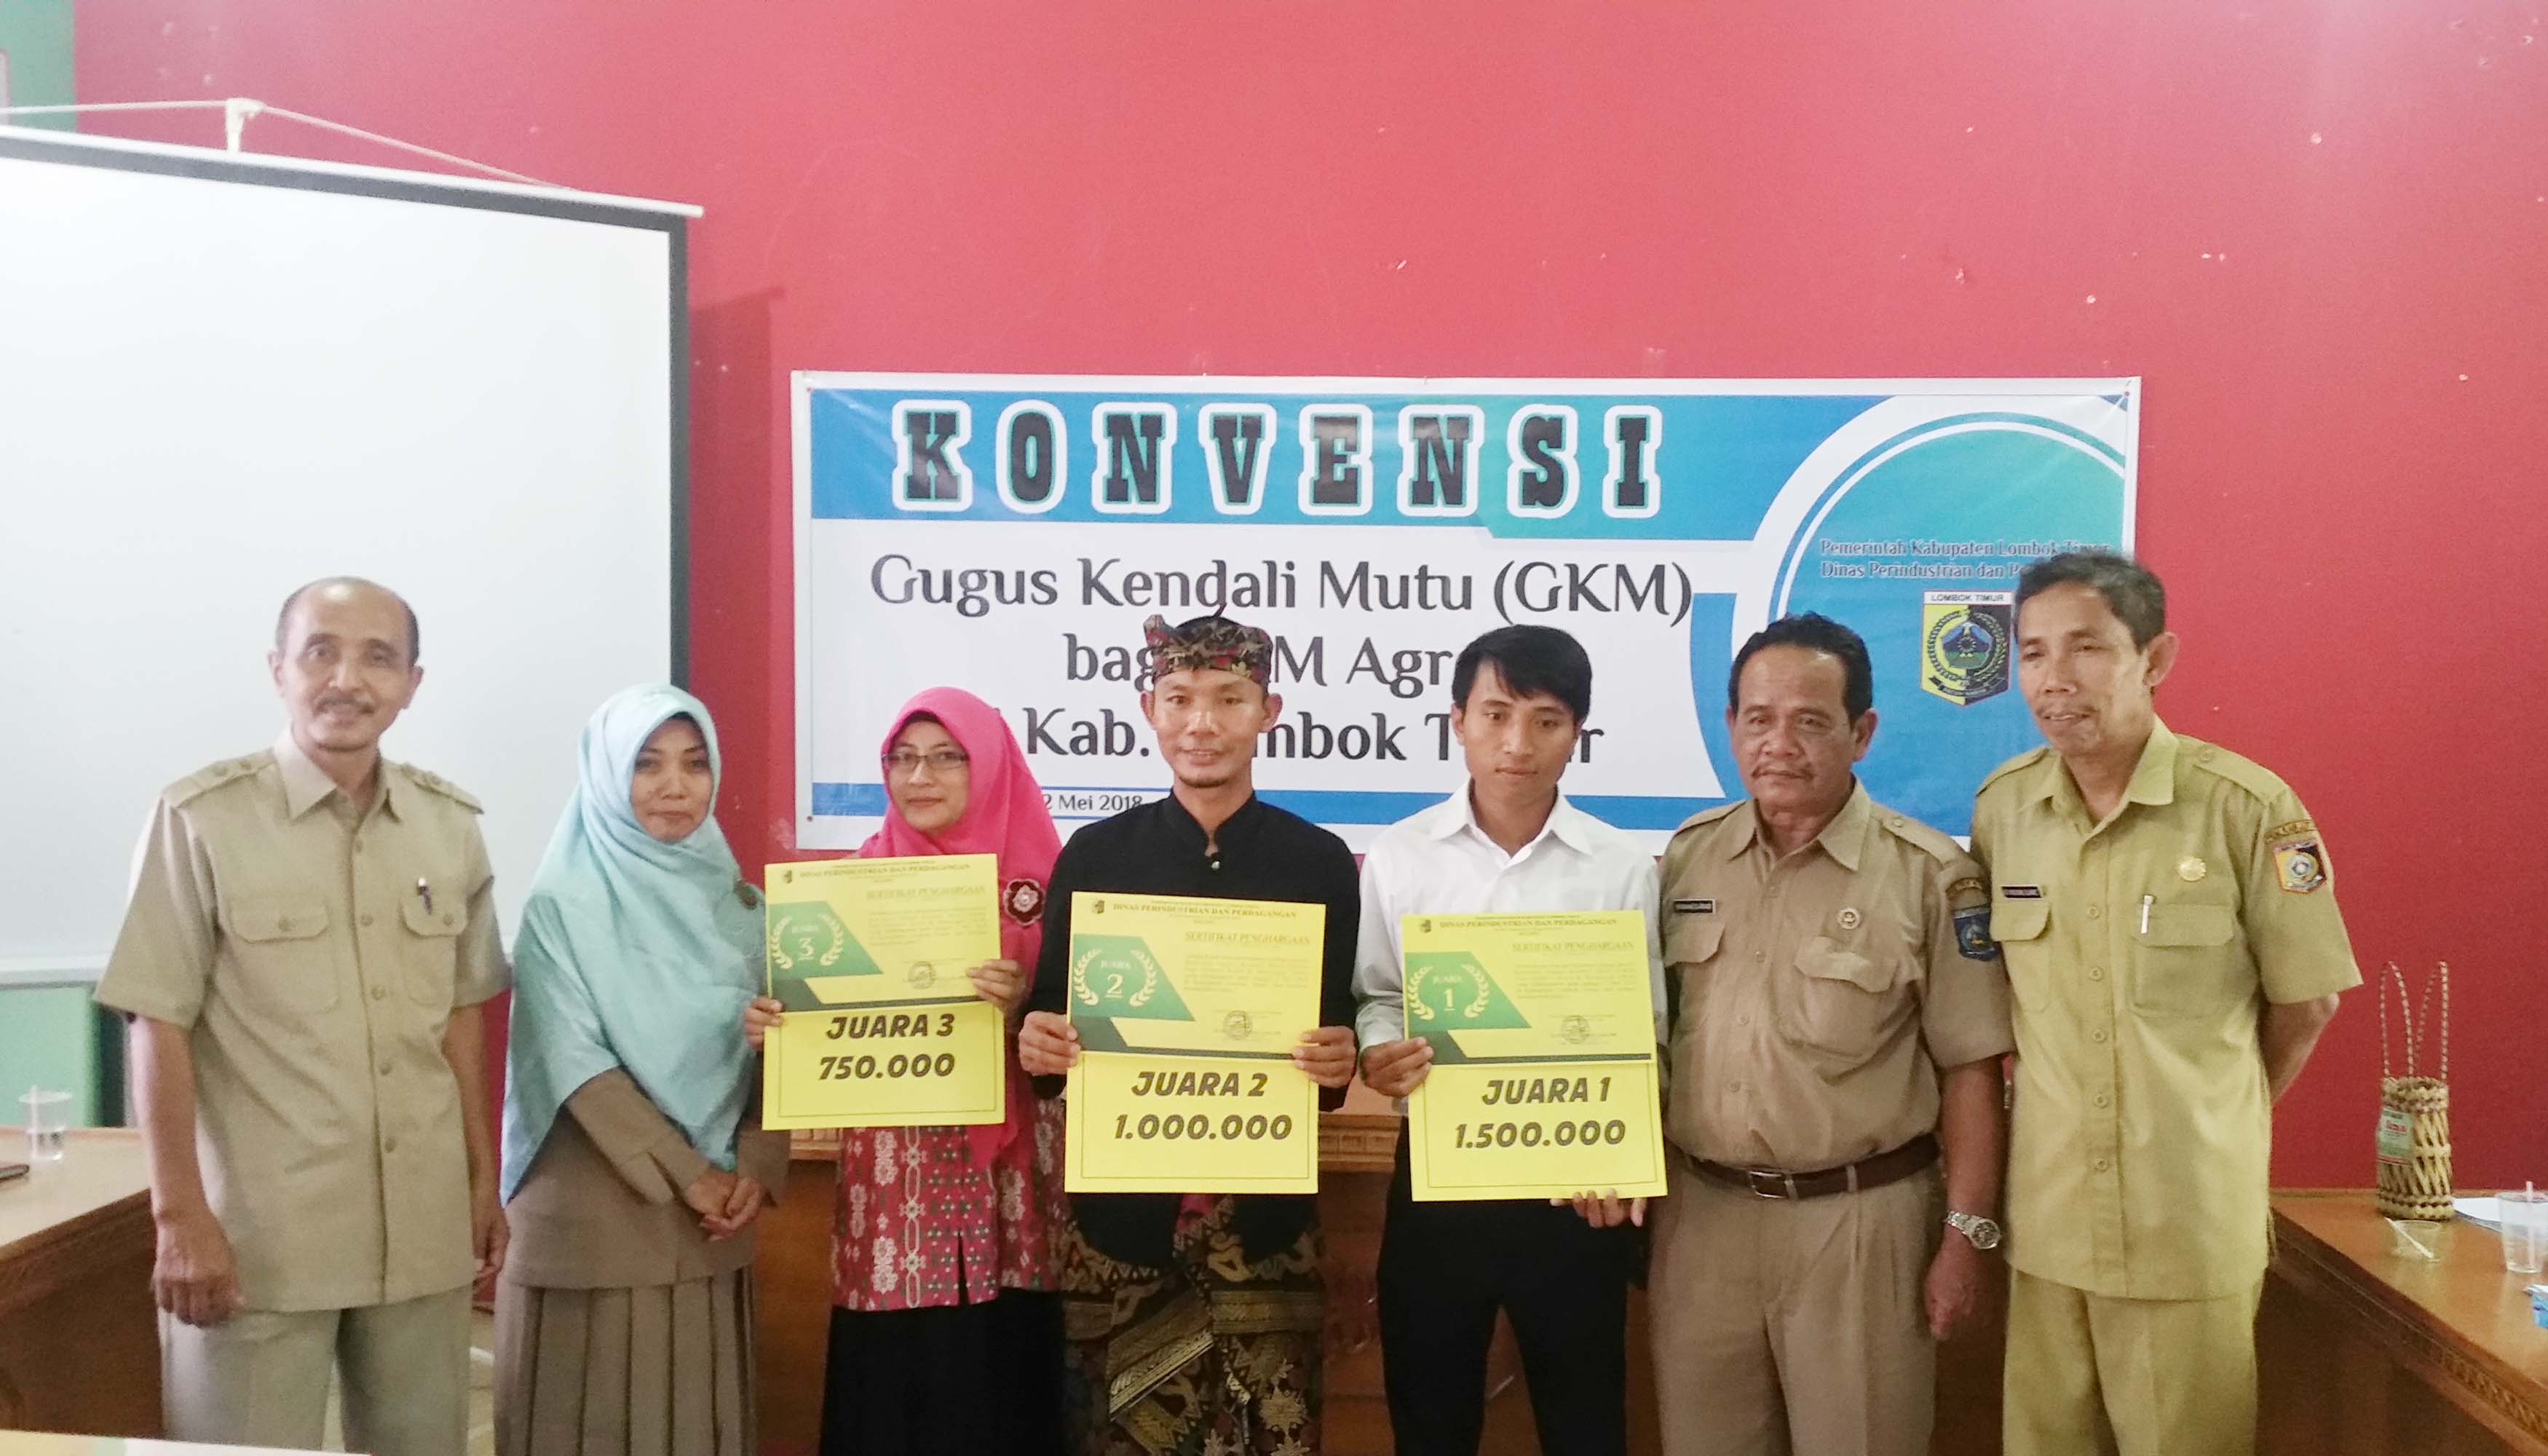 Konvensi Gugus Kendali Mutu Lombok Timur